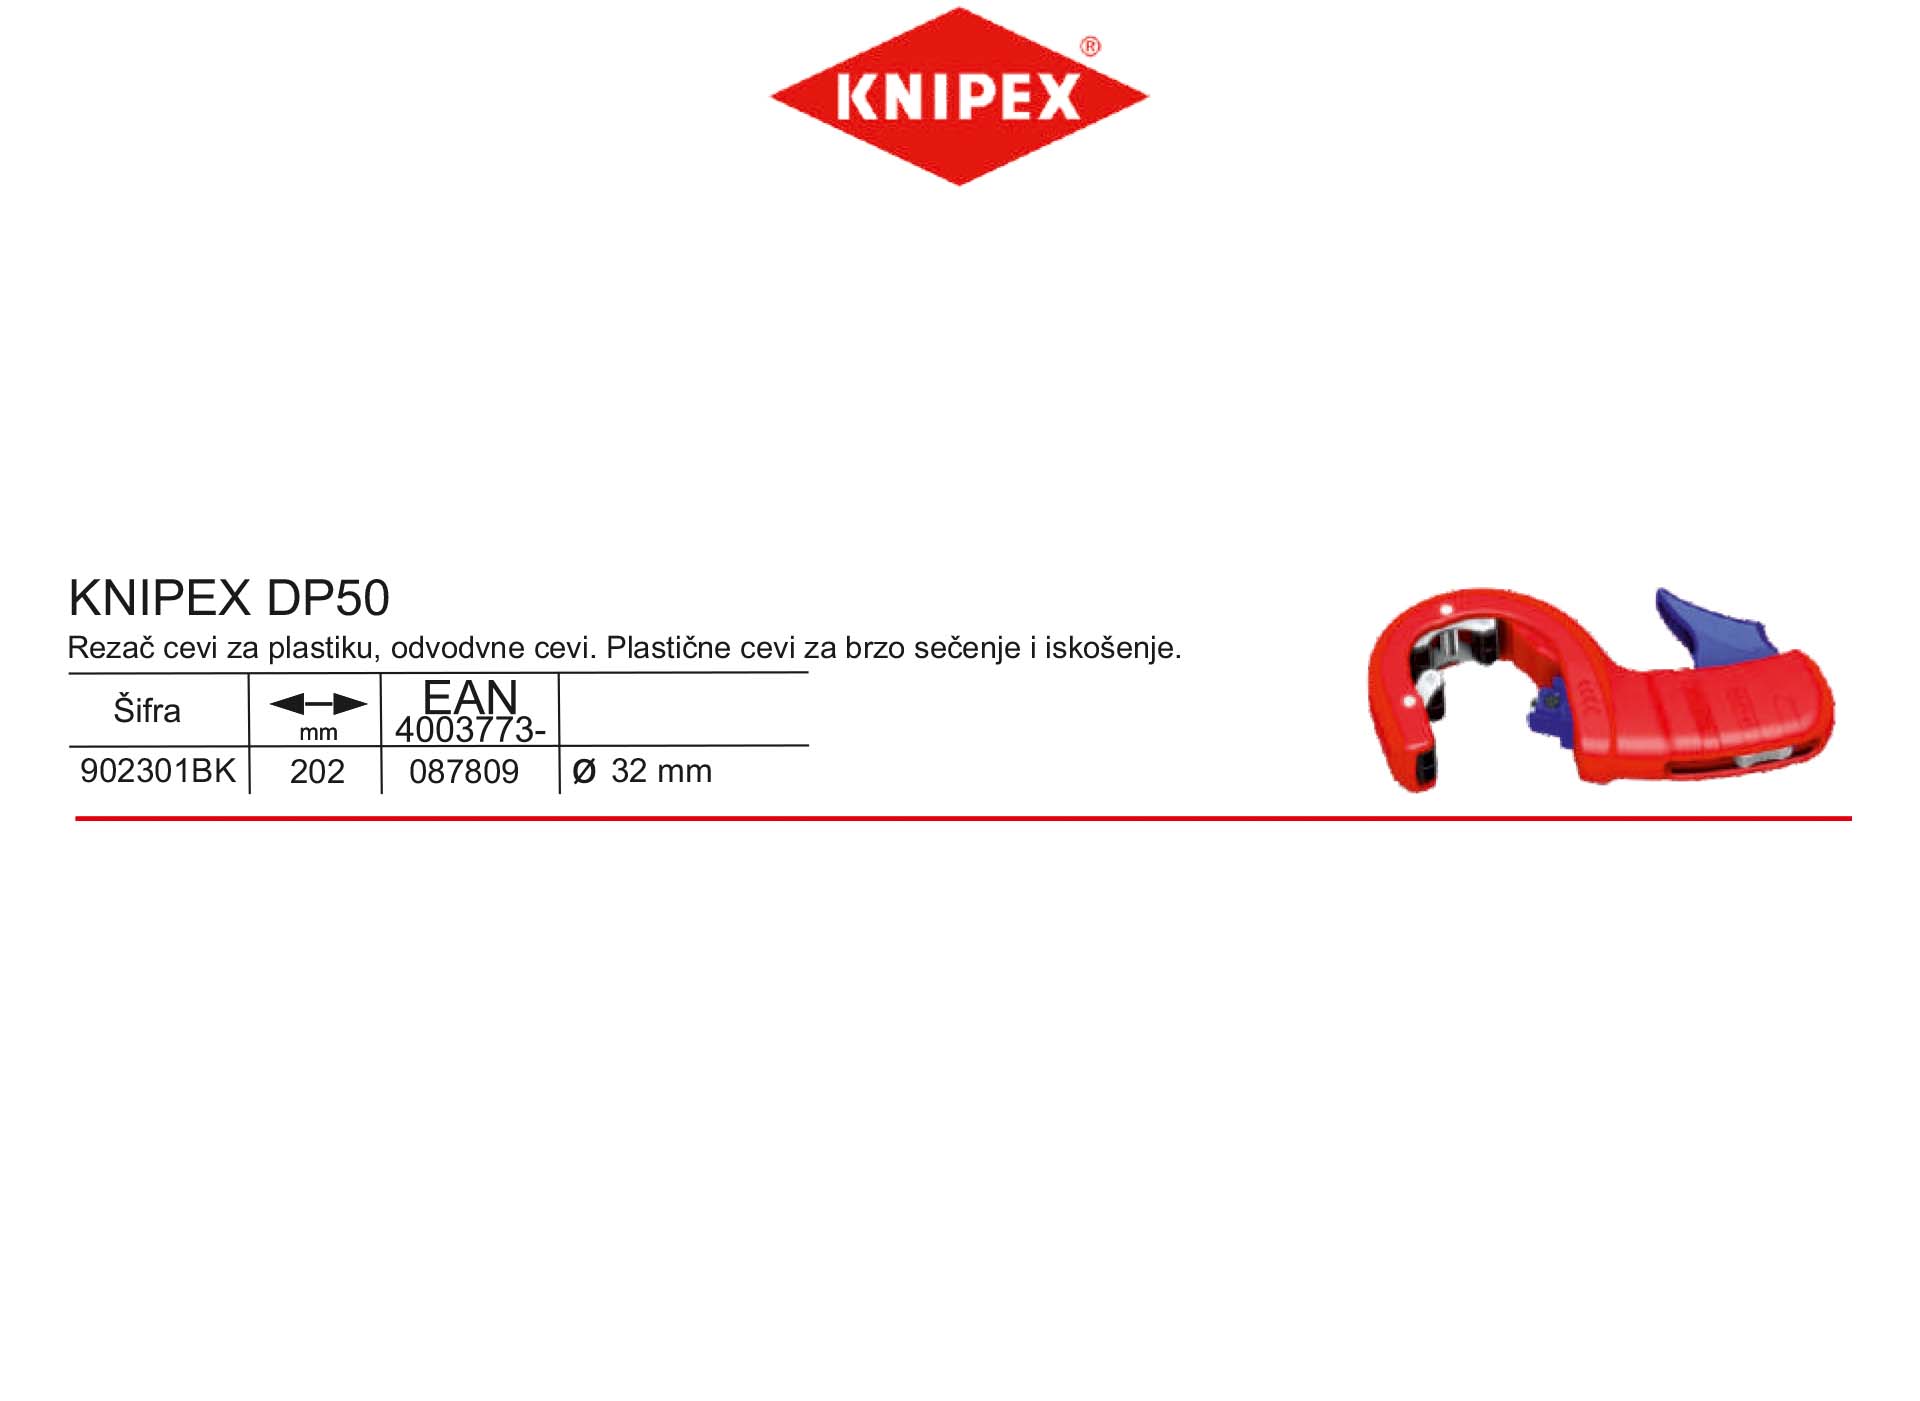 KNIPEX DP50 rezač cevi za plastiku